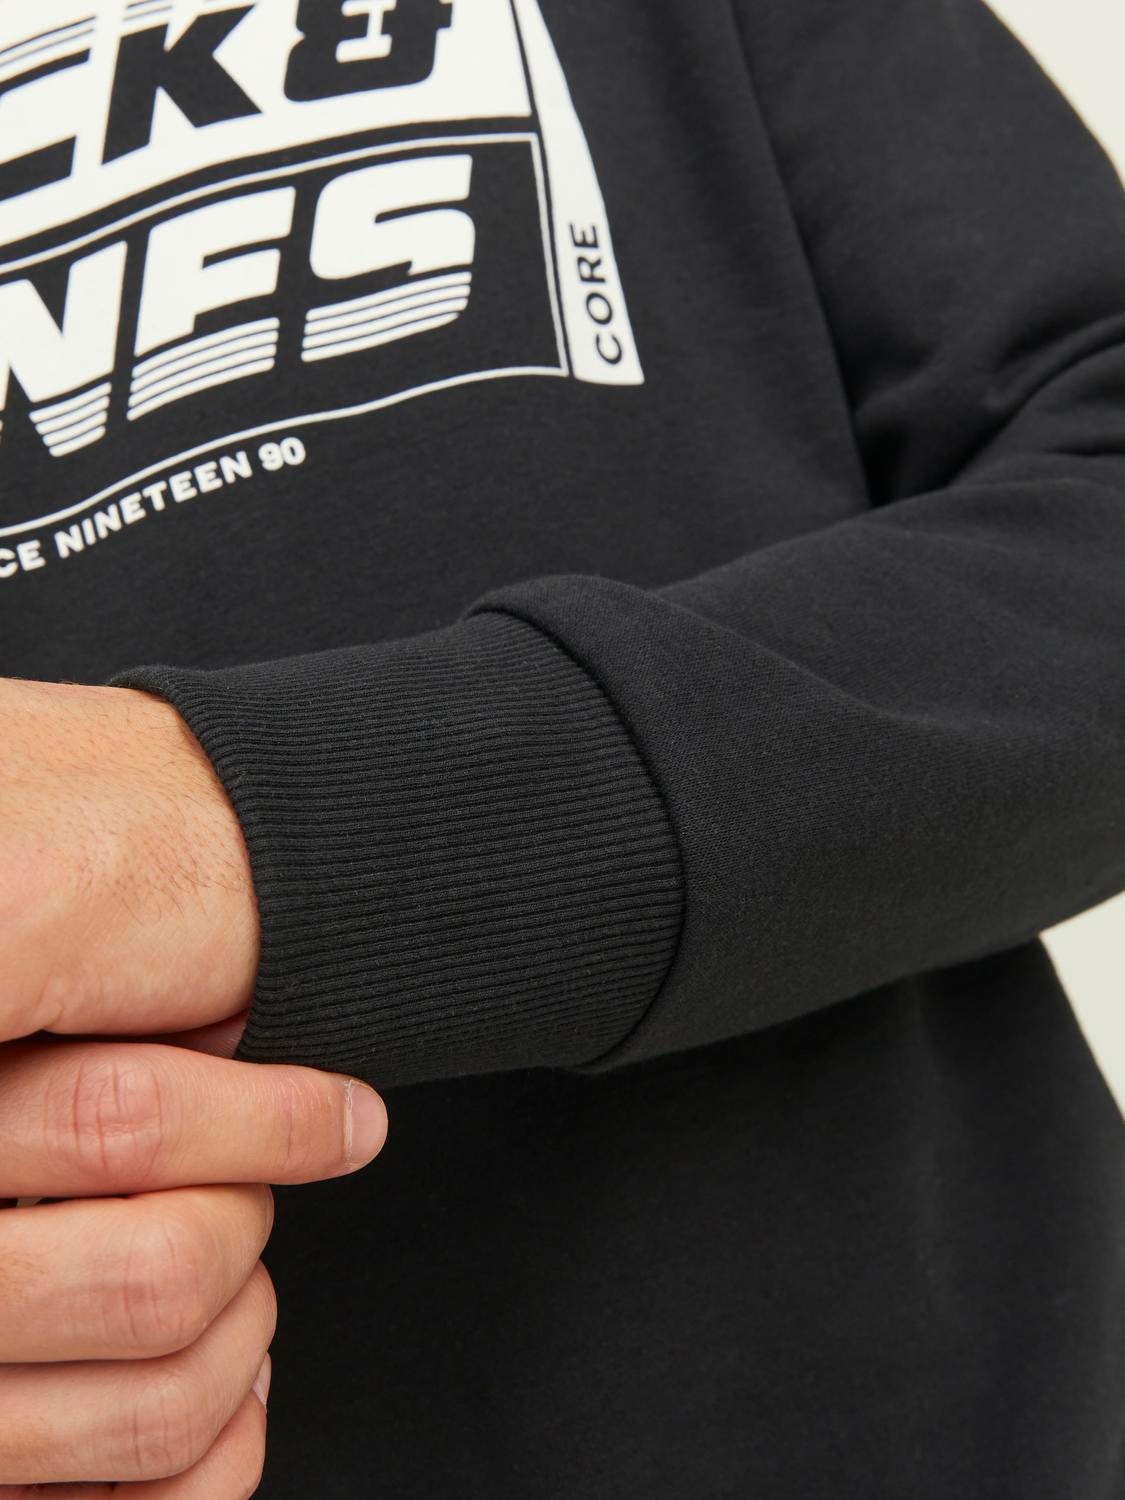 Jack & Jones Logo Sweatshirt mit Rundhals -Black - 12243922